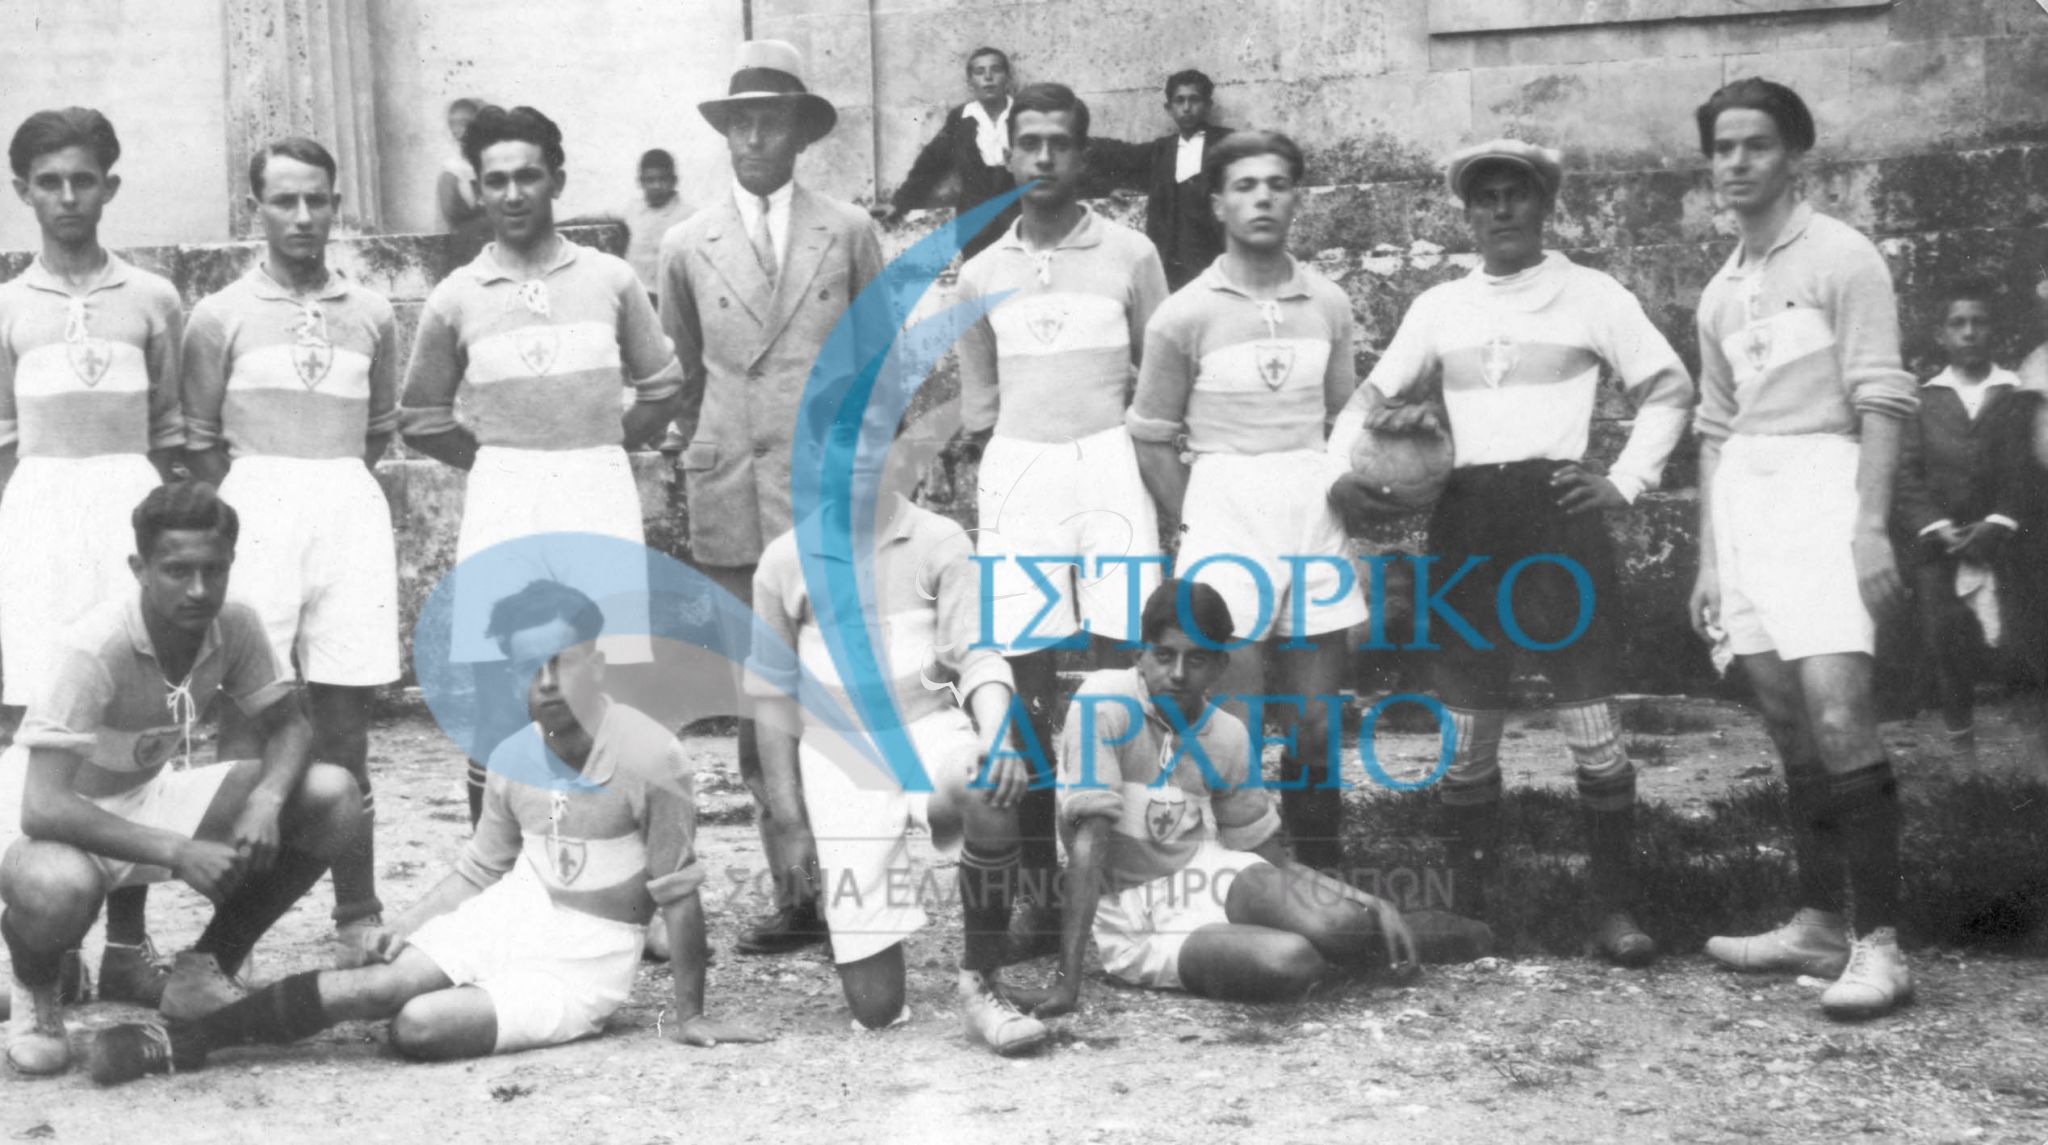 Η ποδοσφαιρική συνάντηση της Κέρκυρας σε συνάντηση με αντίστοιχη ομάδα που έφερε ισοπαλία τον Ιούνιο του 1930.